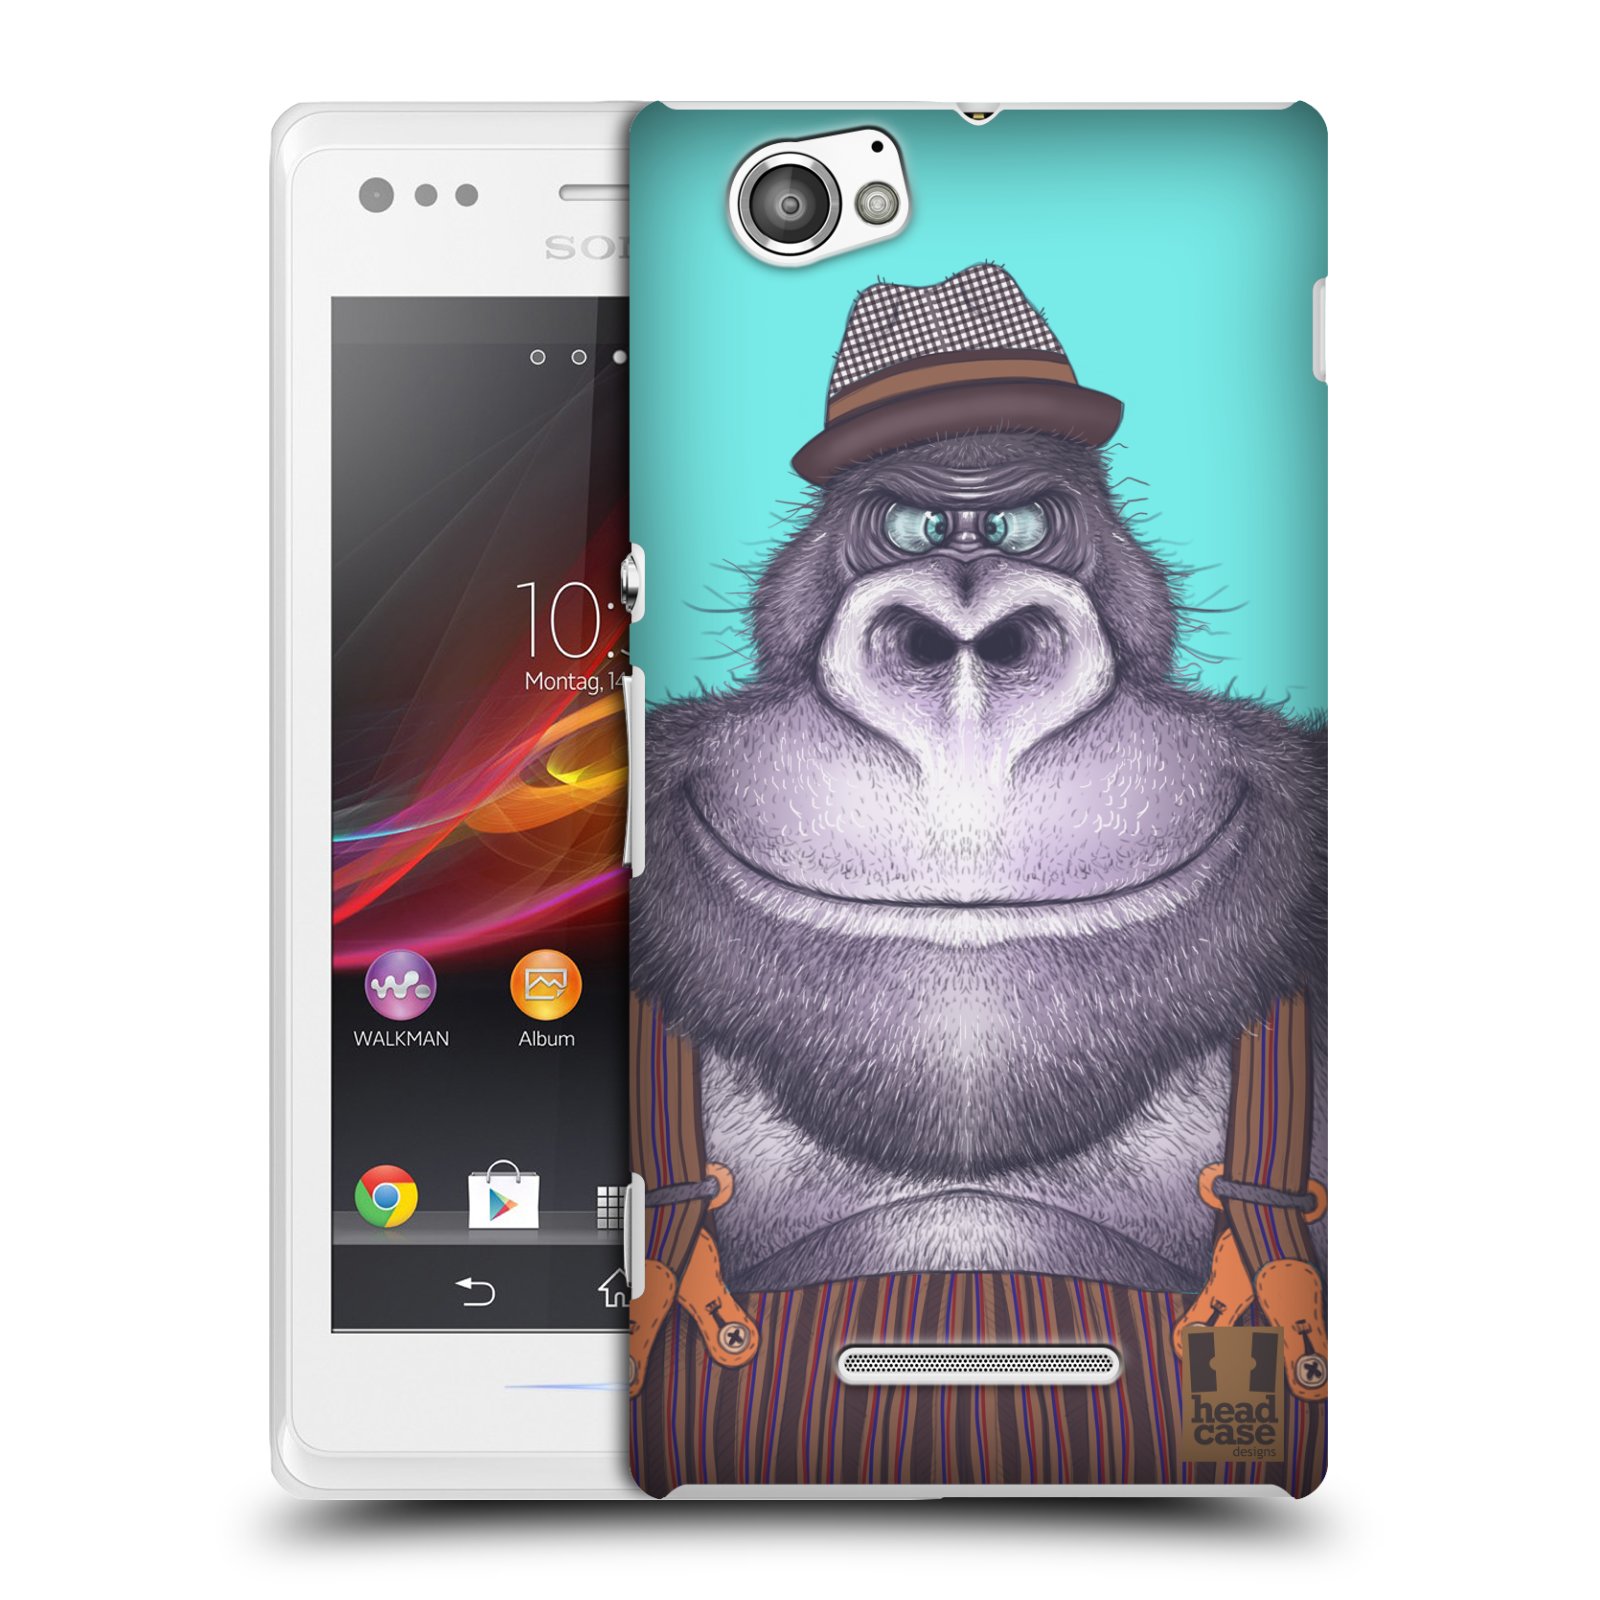 HEAD CASE plastový obal na mobil Sony Xperia M vzor Kreslená zvířátka gorila